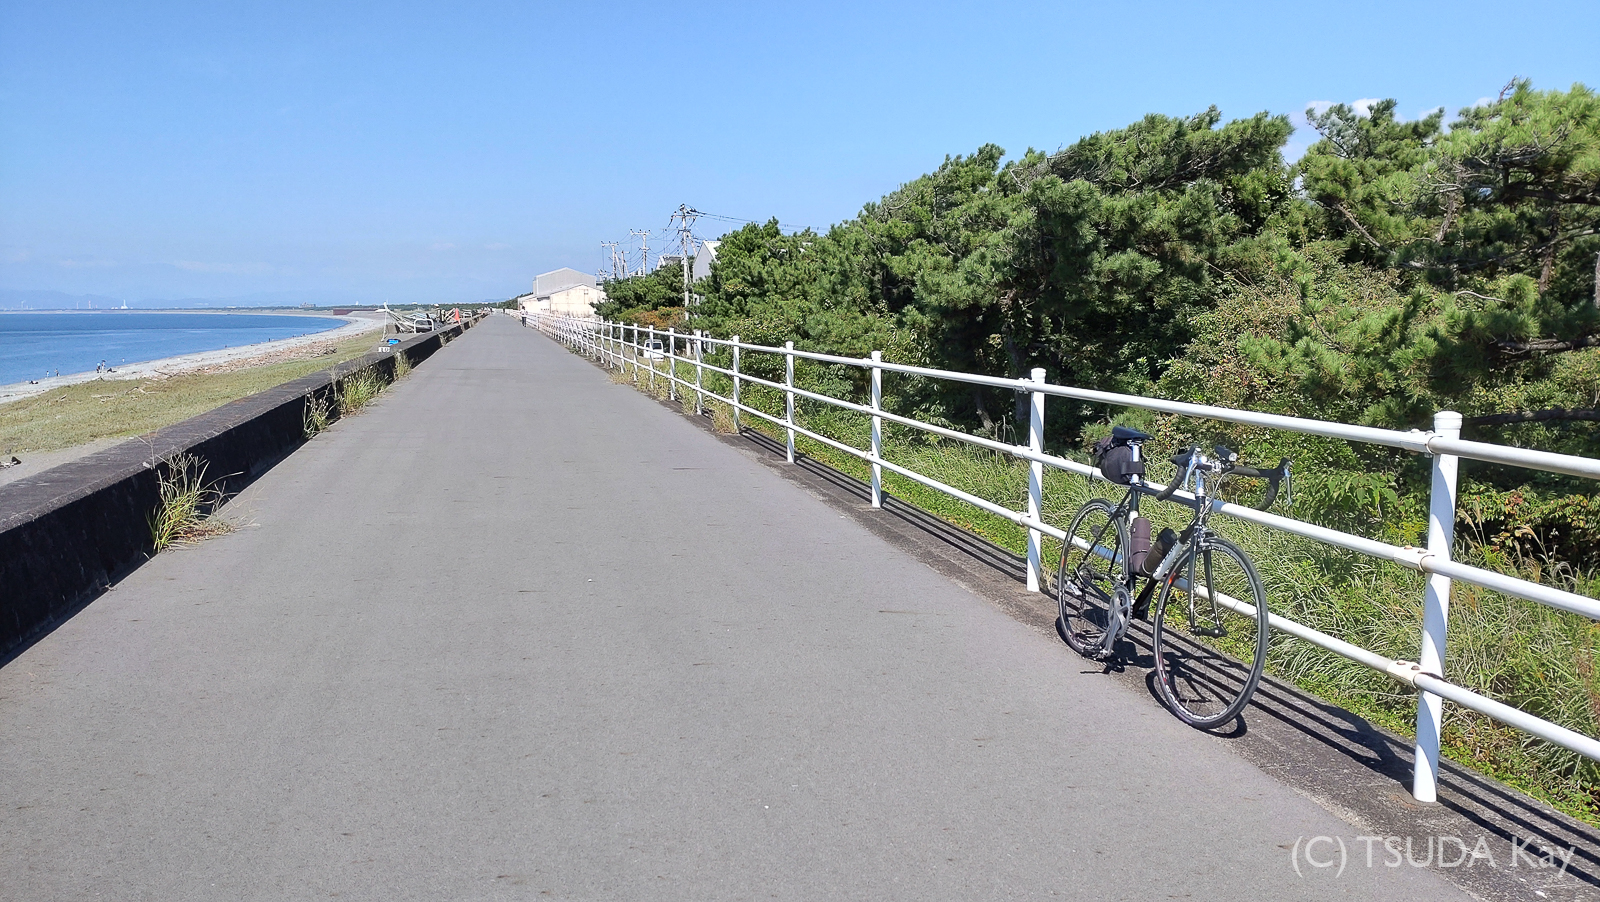 I cycled from mishima to shizuoka 25